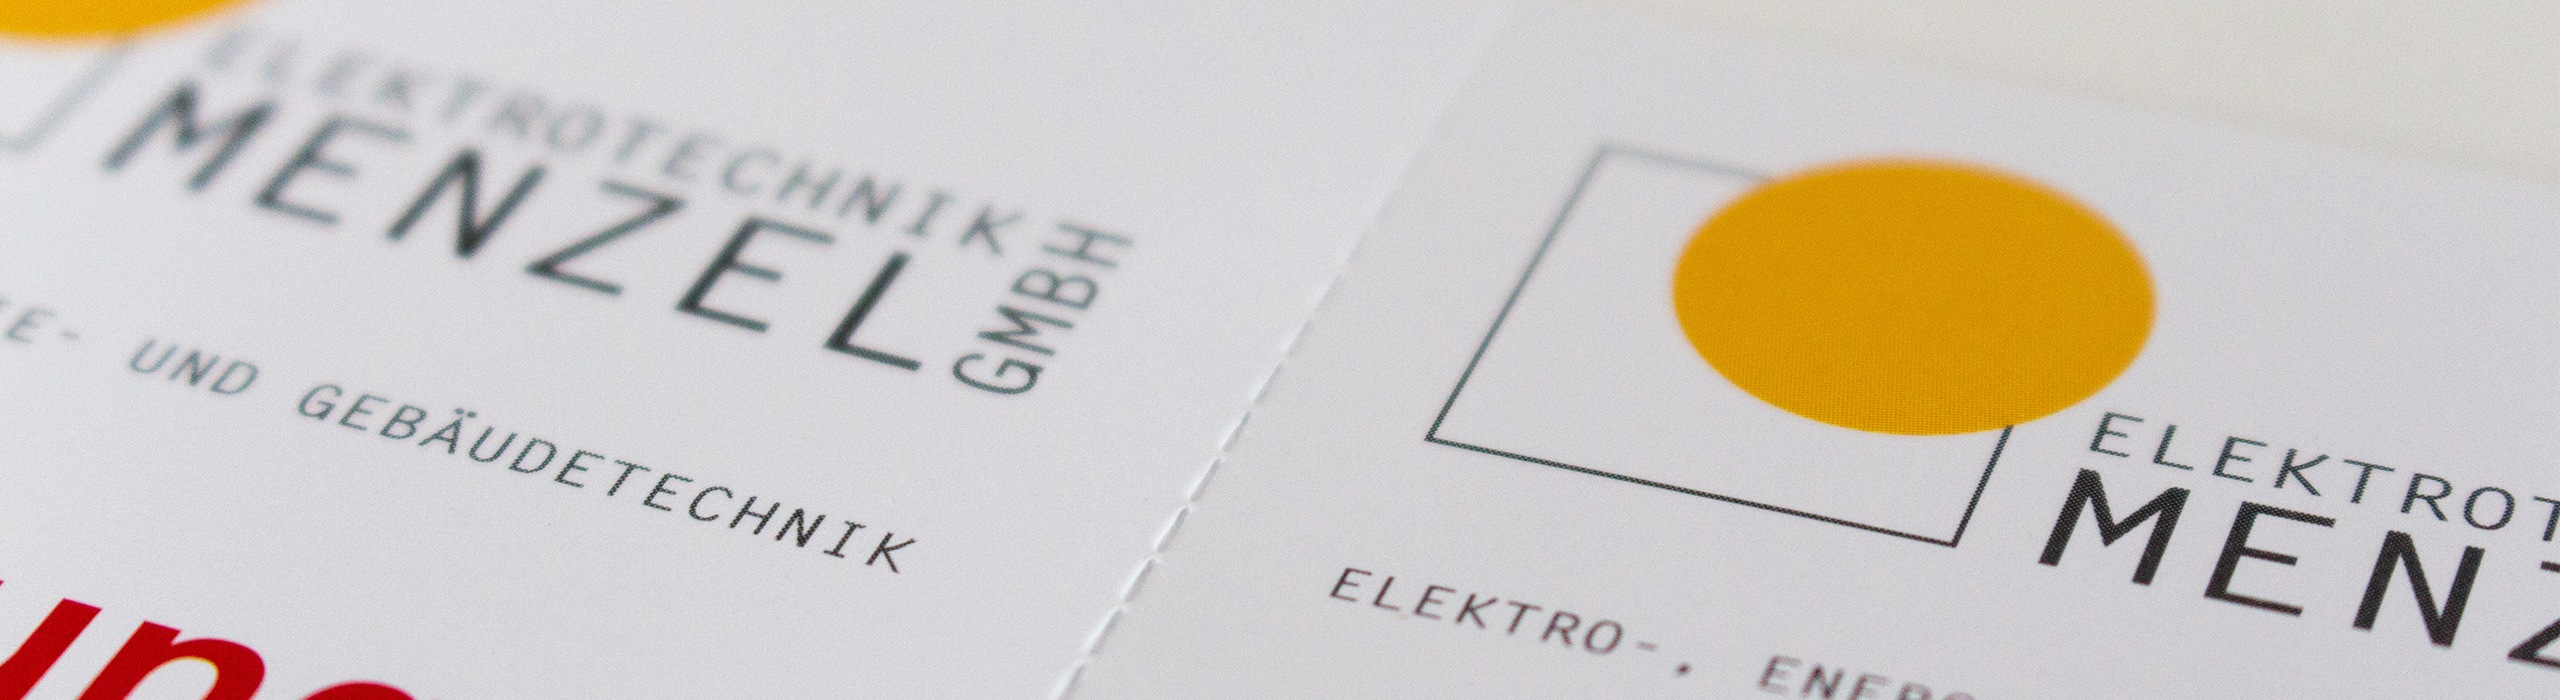 Flyer für Elektrotechnik Menzel mit Perforation Detail vorne